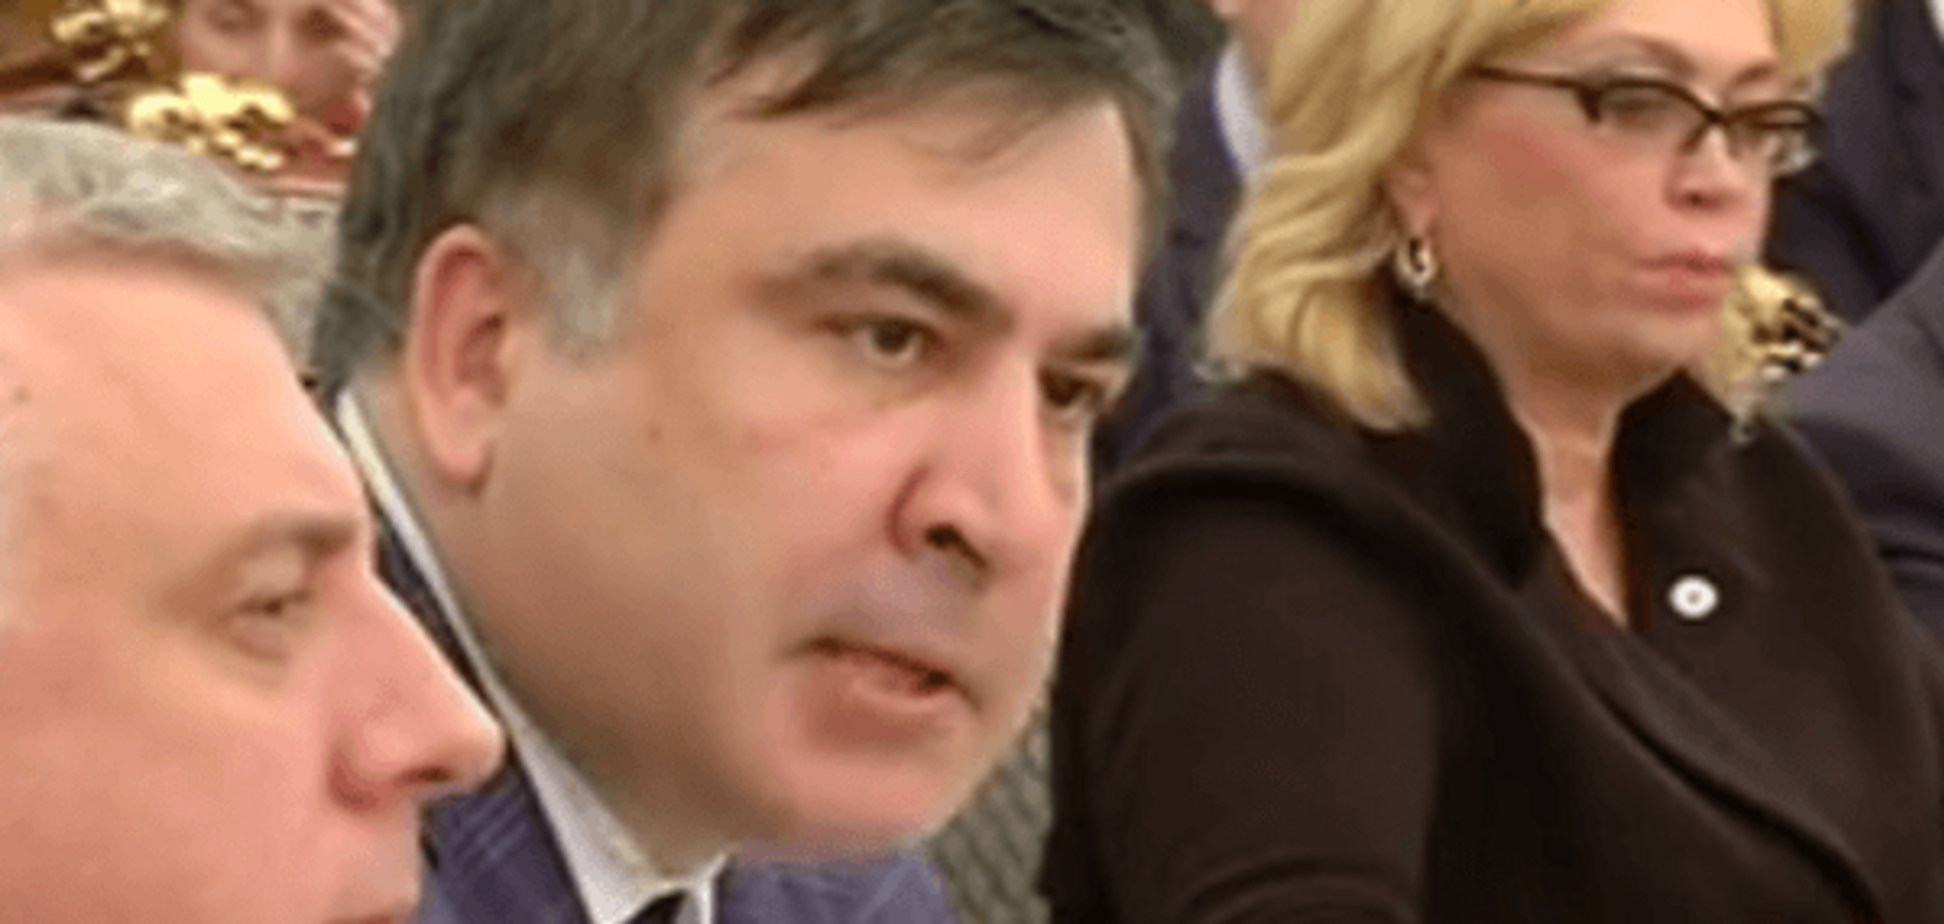 От слов не отказываюсь, мы избавим страну от воров и жуликов – Саакашвили отреагировал на скандальное видео